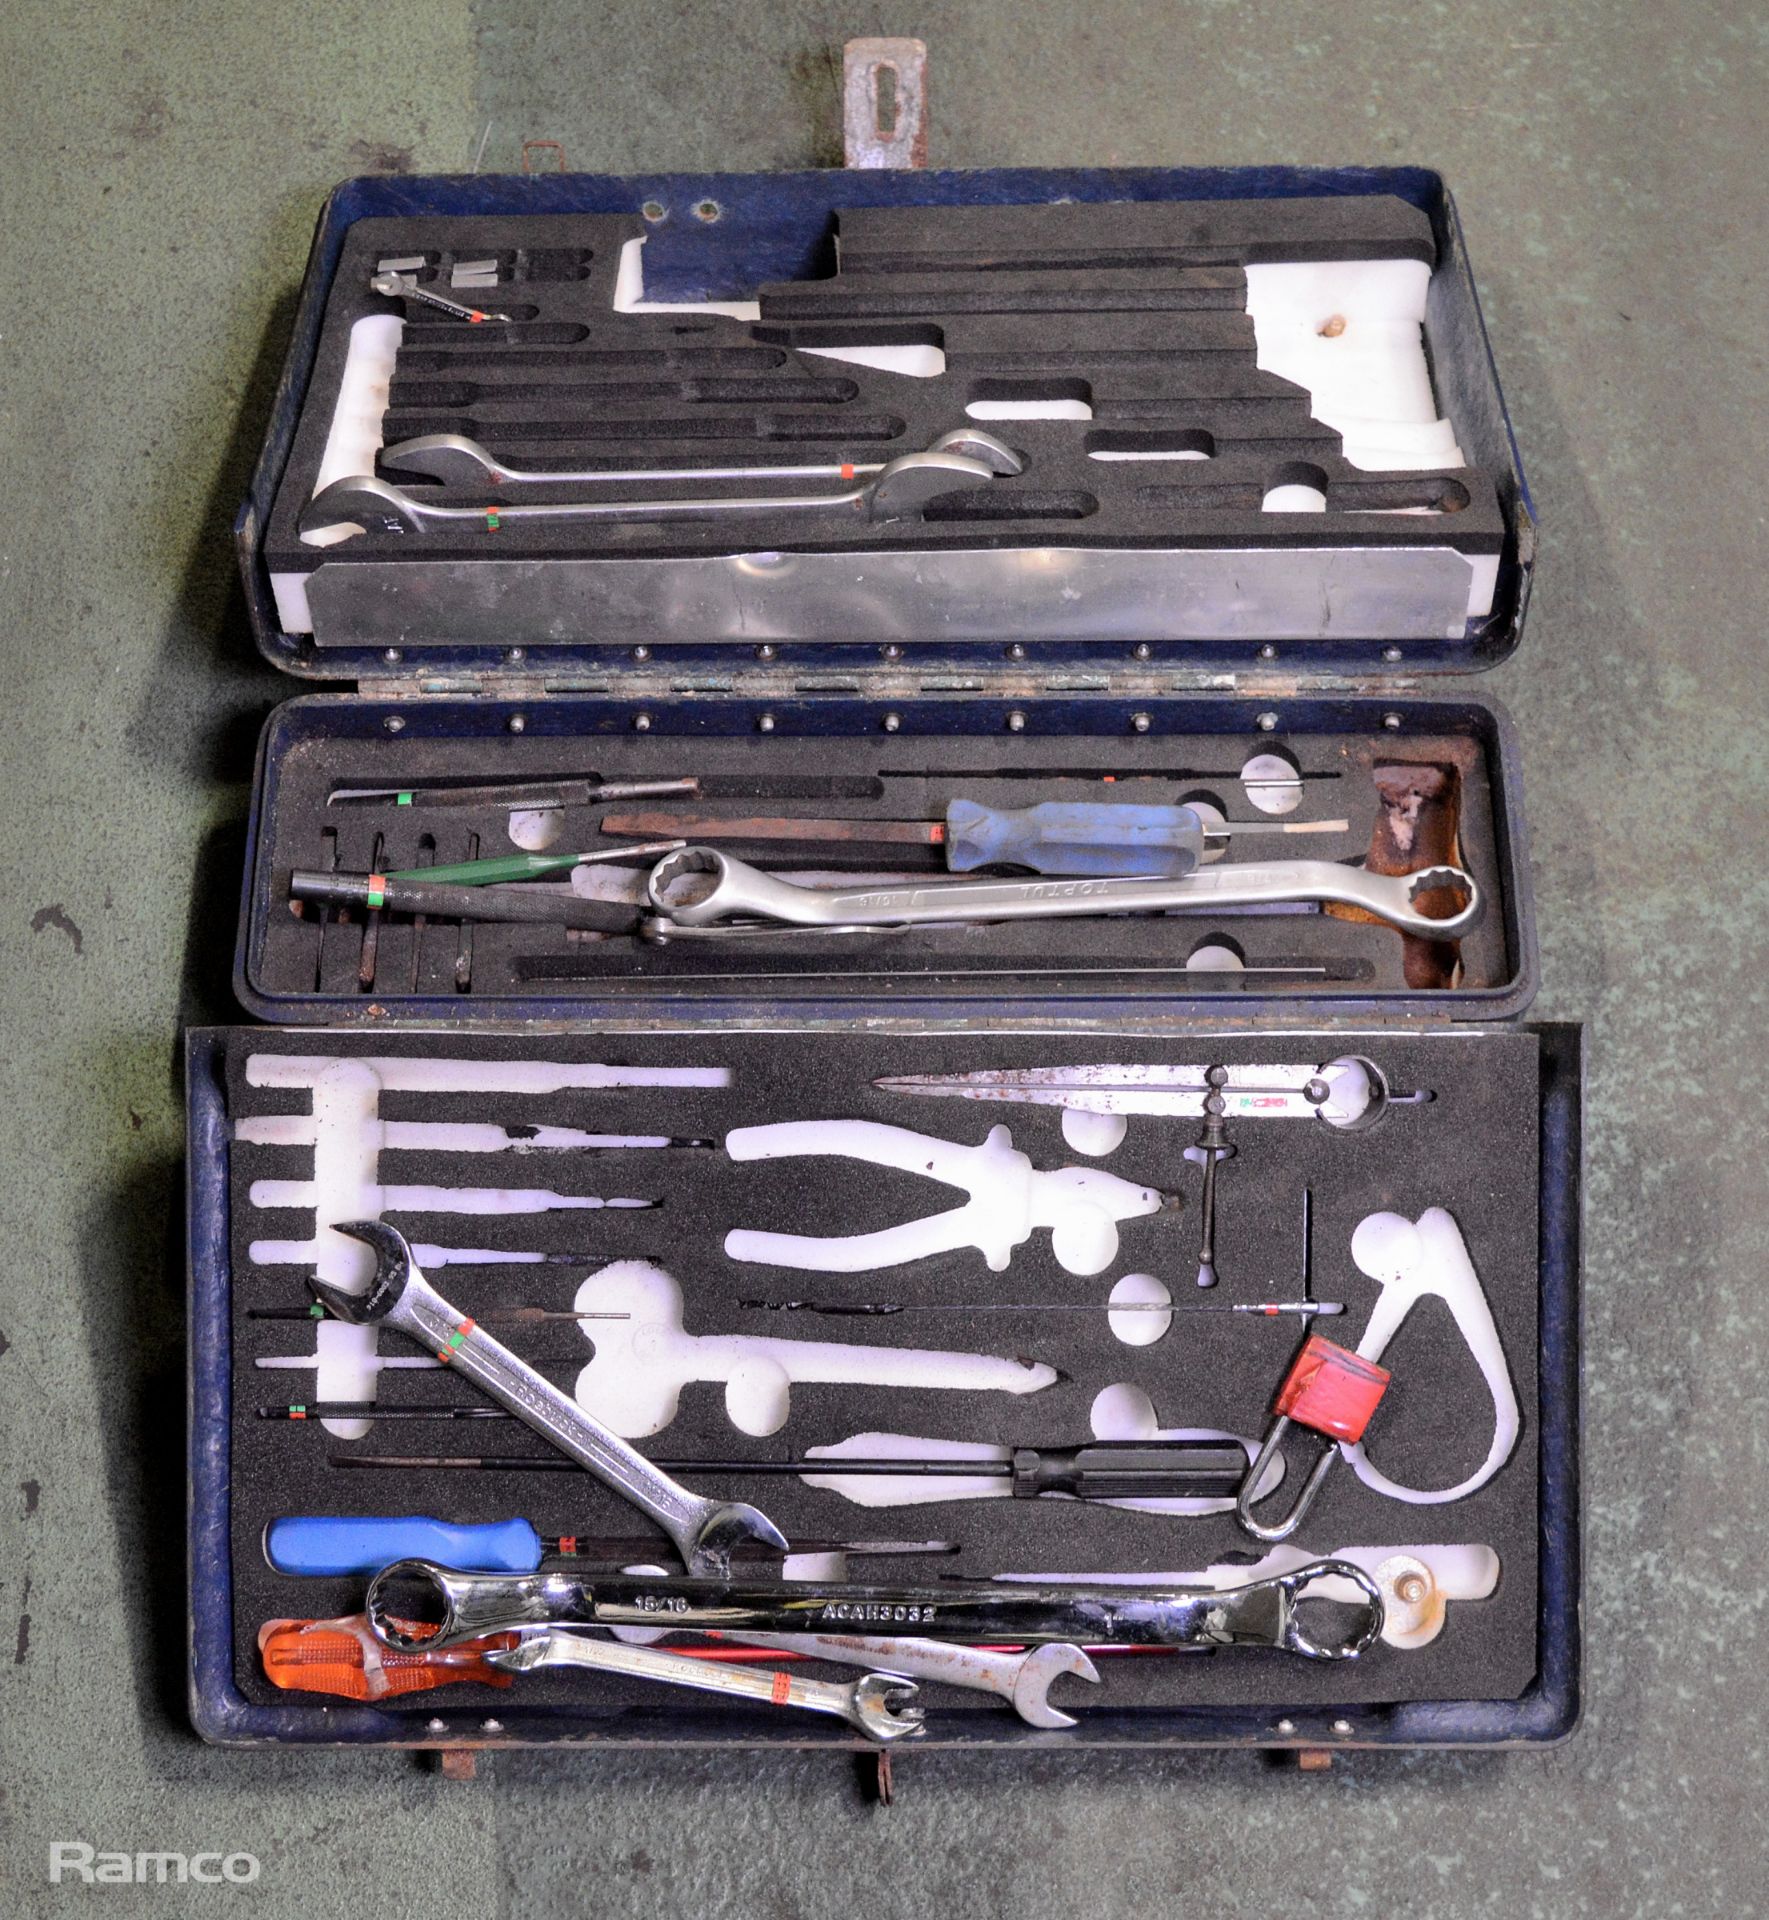 Blue Fiberglass tool box L52 x W16 x H40cm - Incomplete